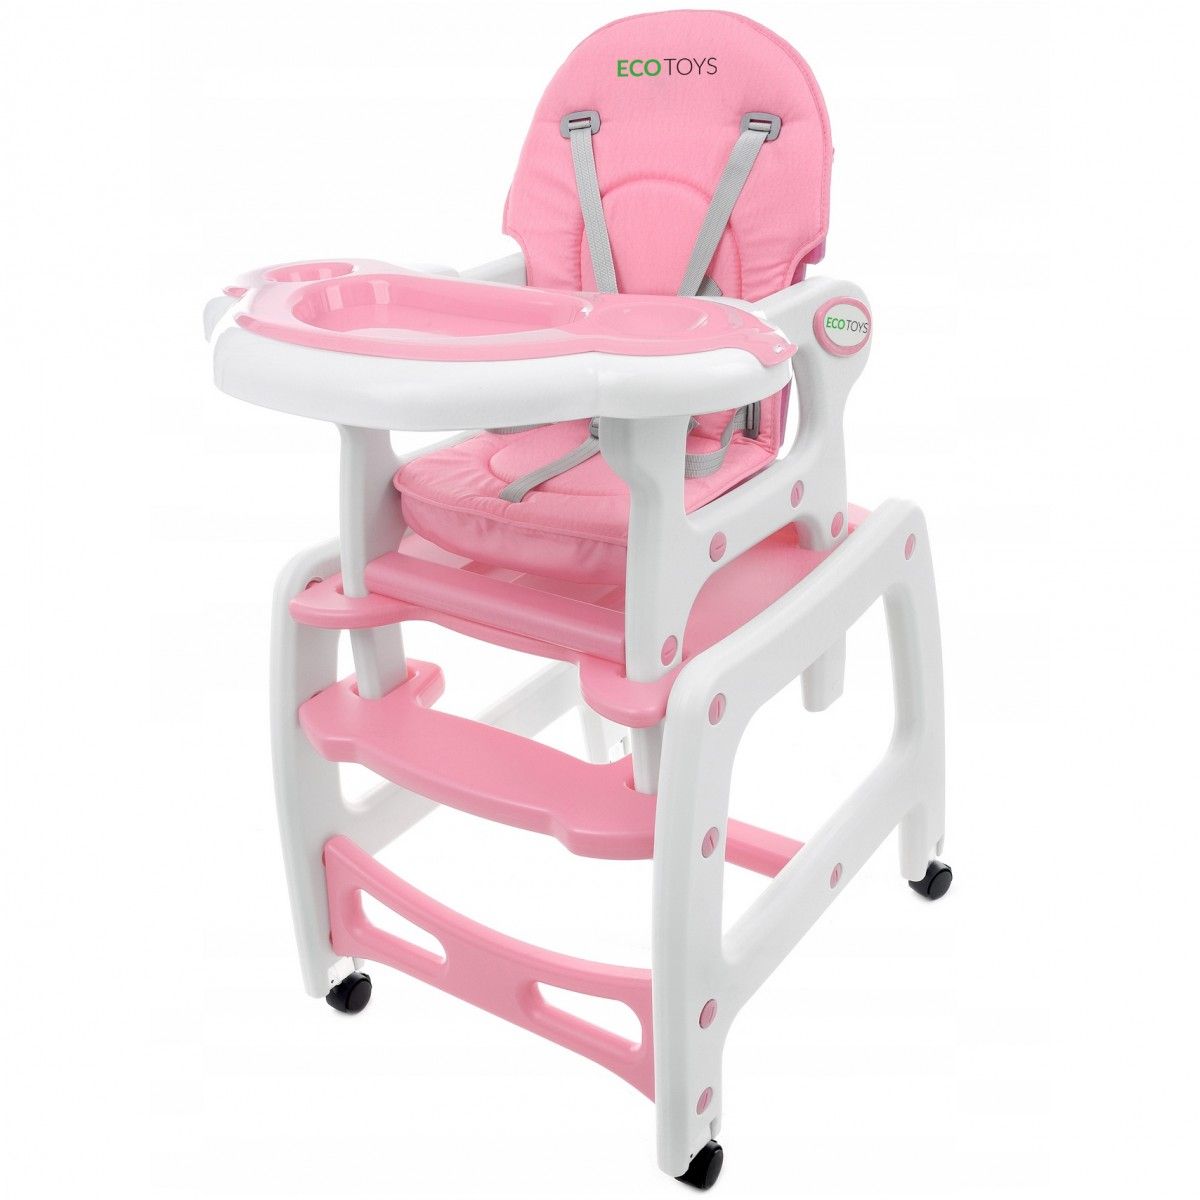 Detská jedálenská stolička EcoToys 3 v 1 DESTI ružová